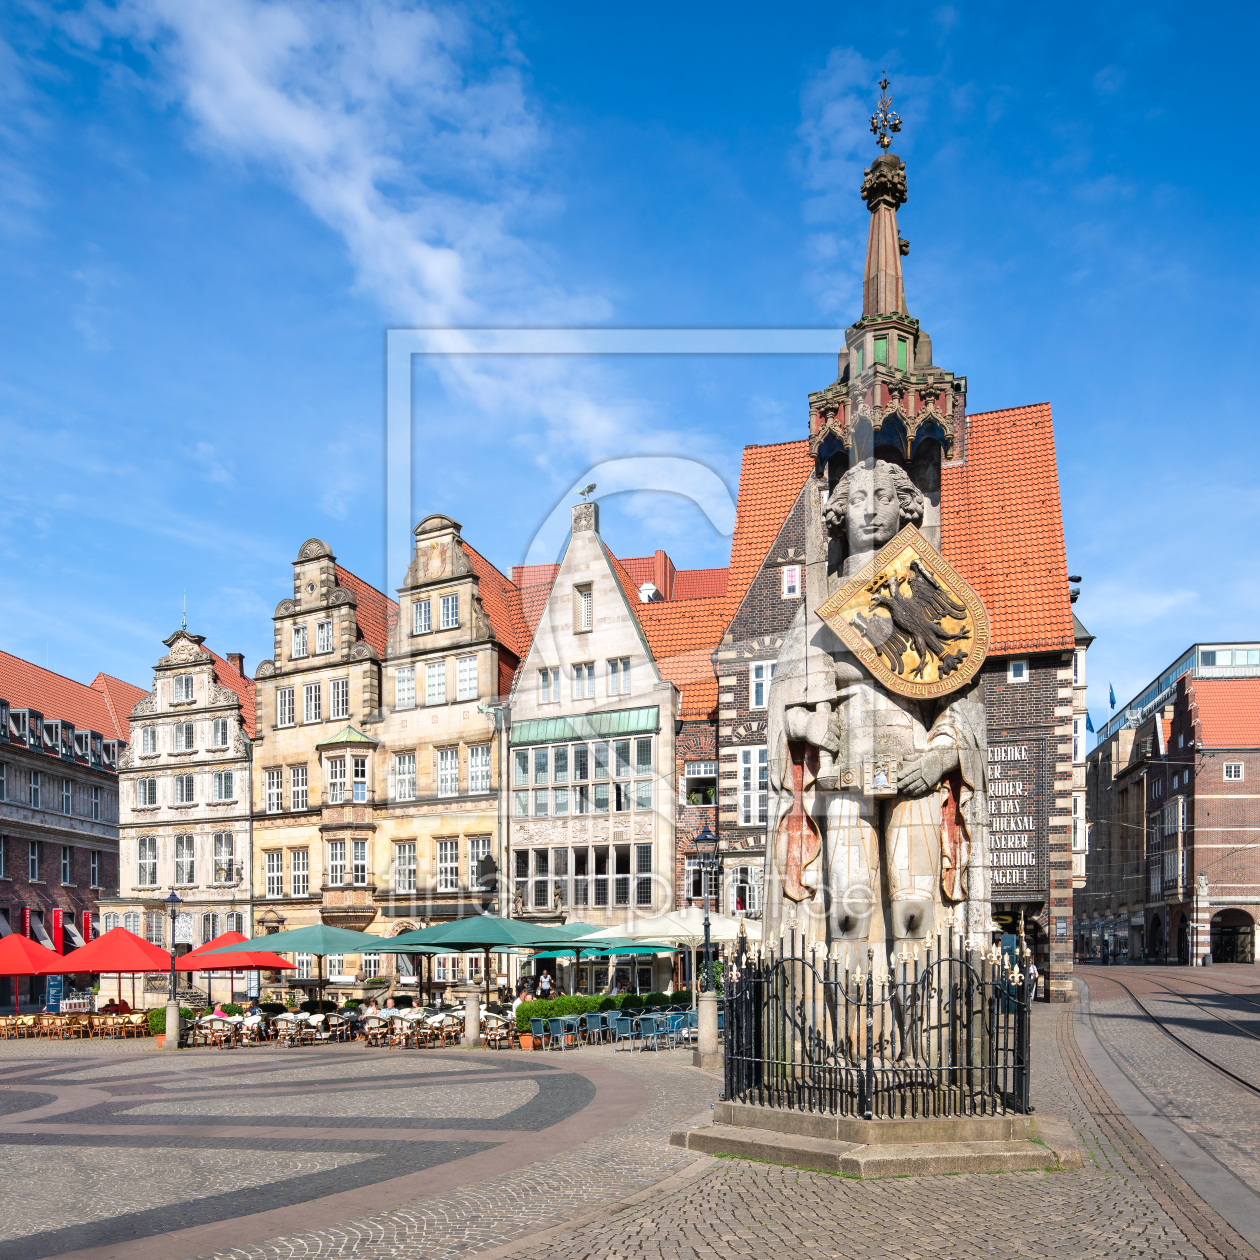 Bild-Nr.: 12002108 Rolandstatue auf dem Marktplatz von Bremen erstellt von eyetronic